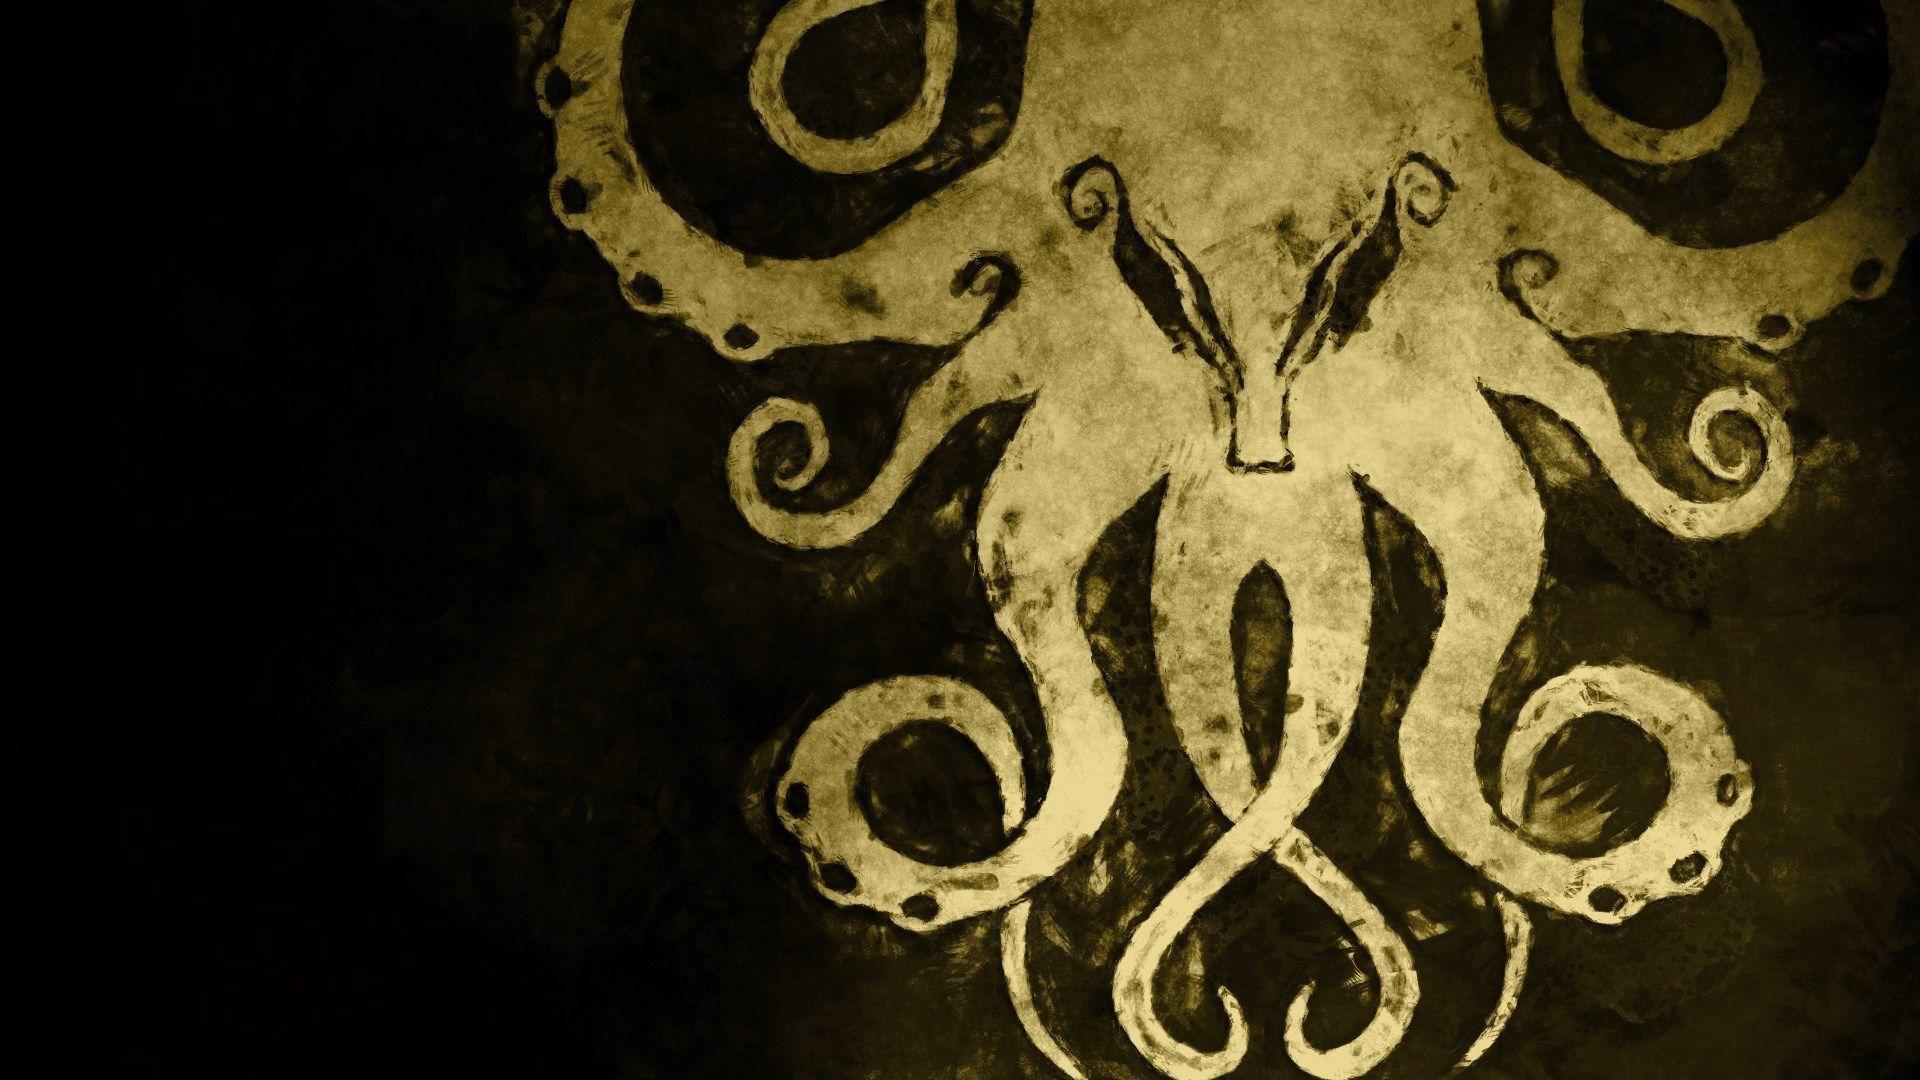 Sci Fi <3 & Fantasy. Hp Lovecraft